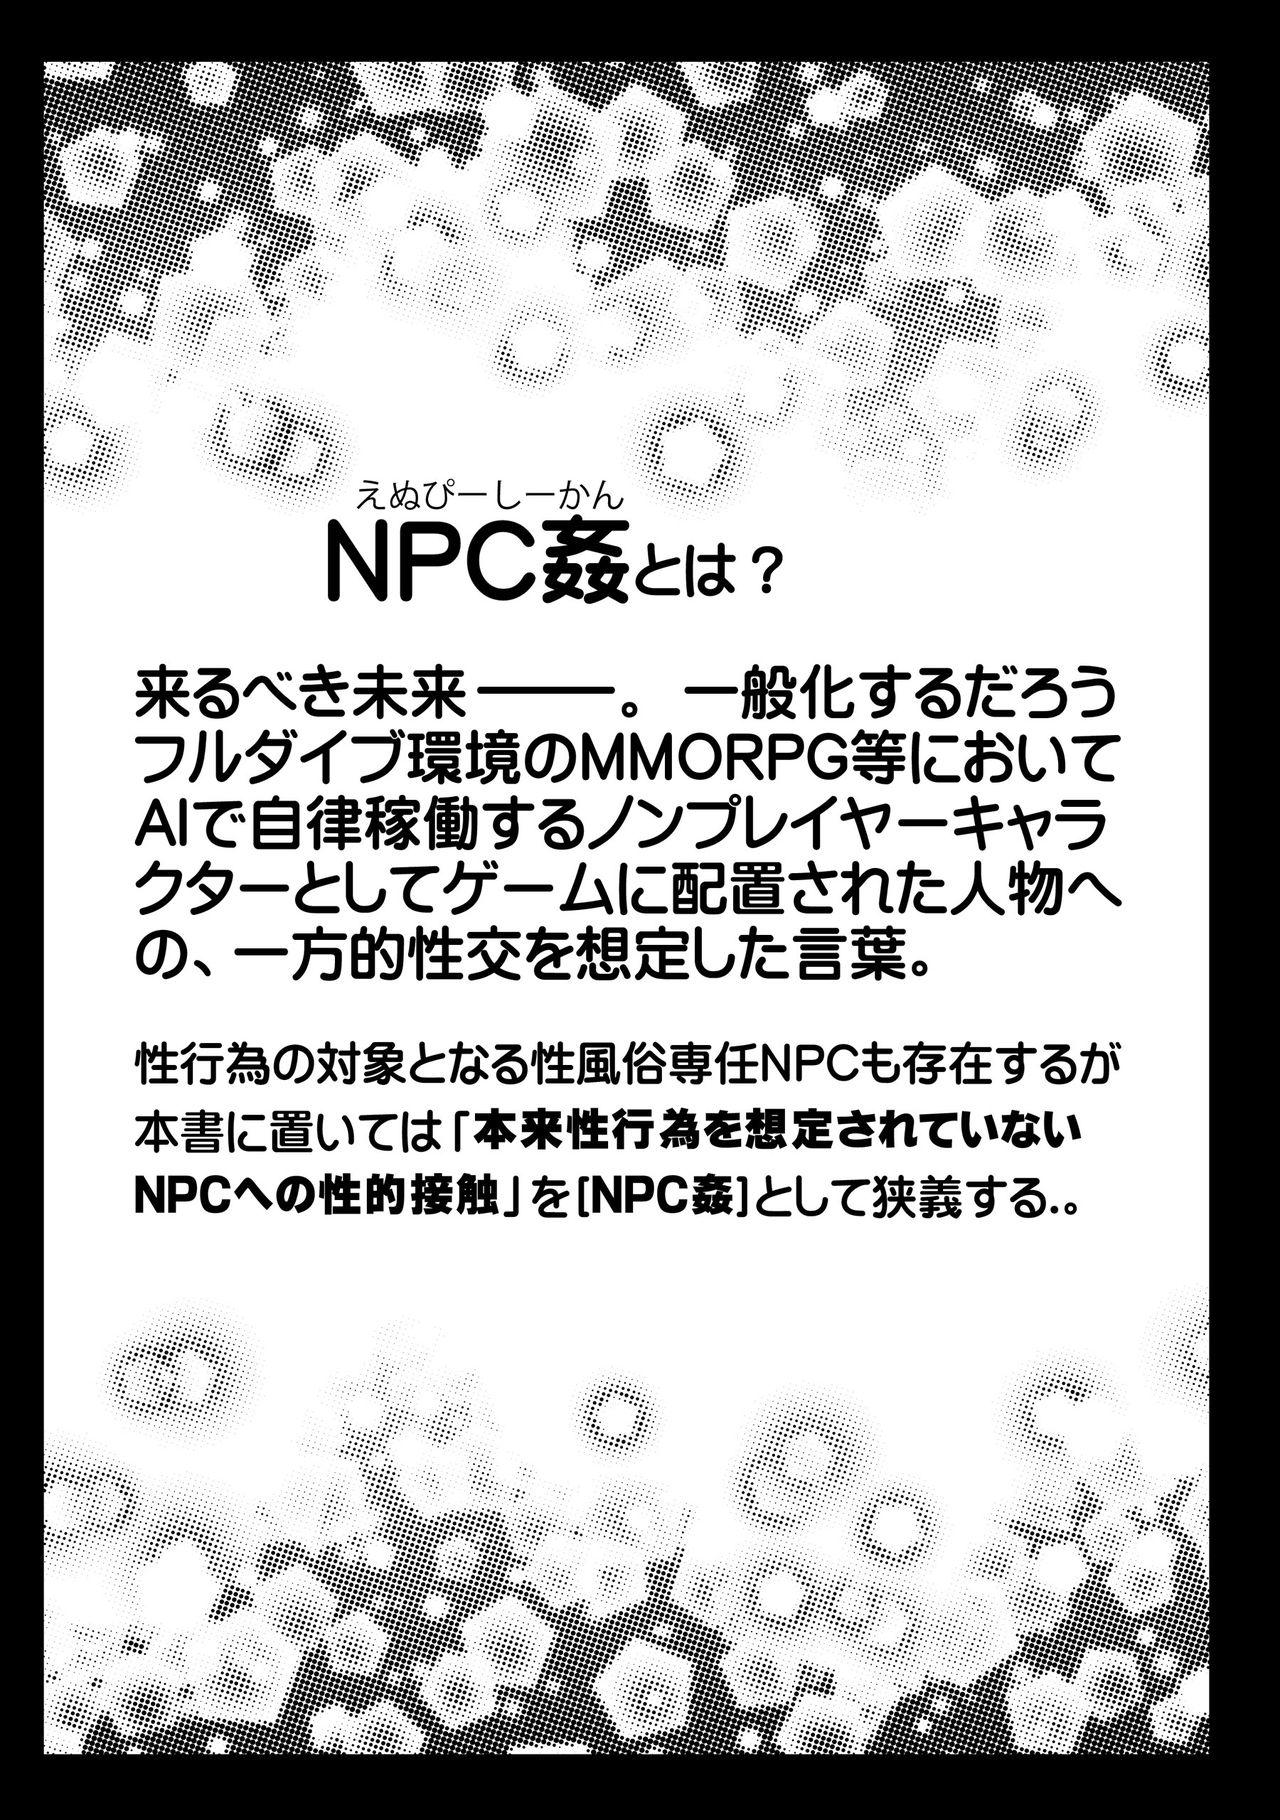 NPCFxxK! 2